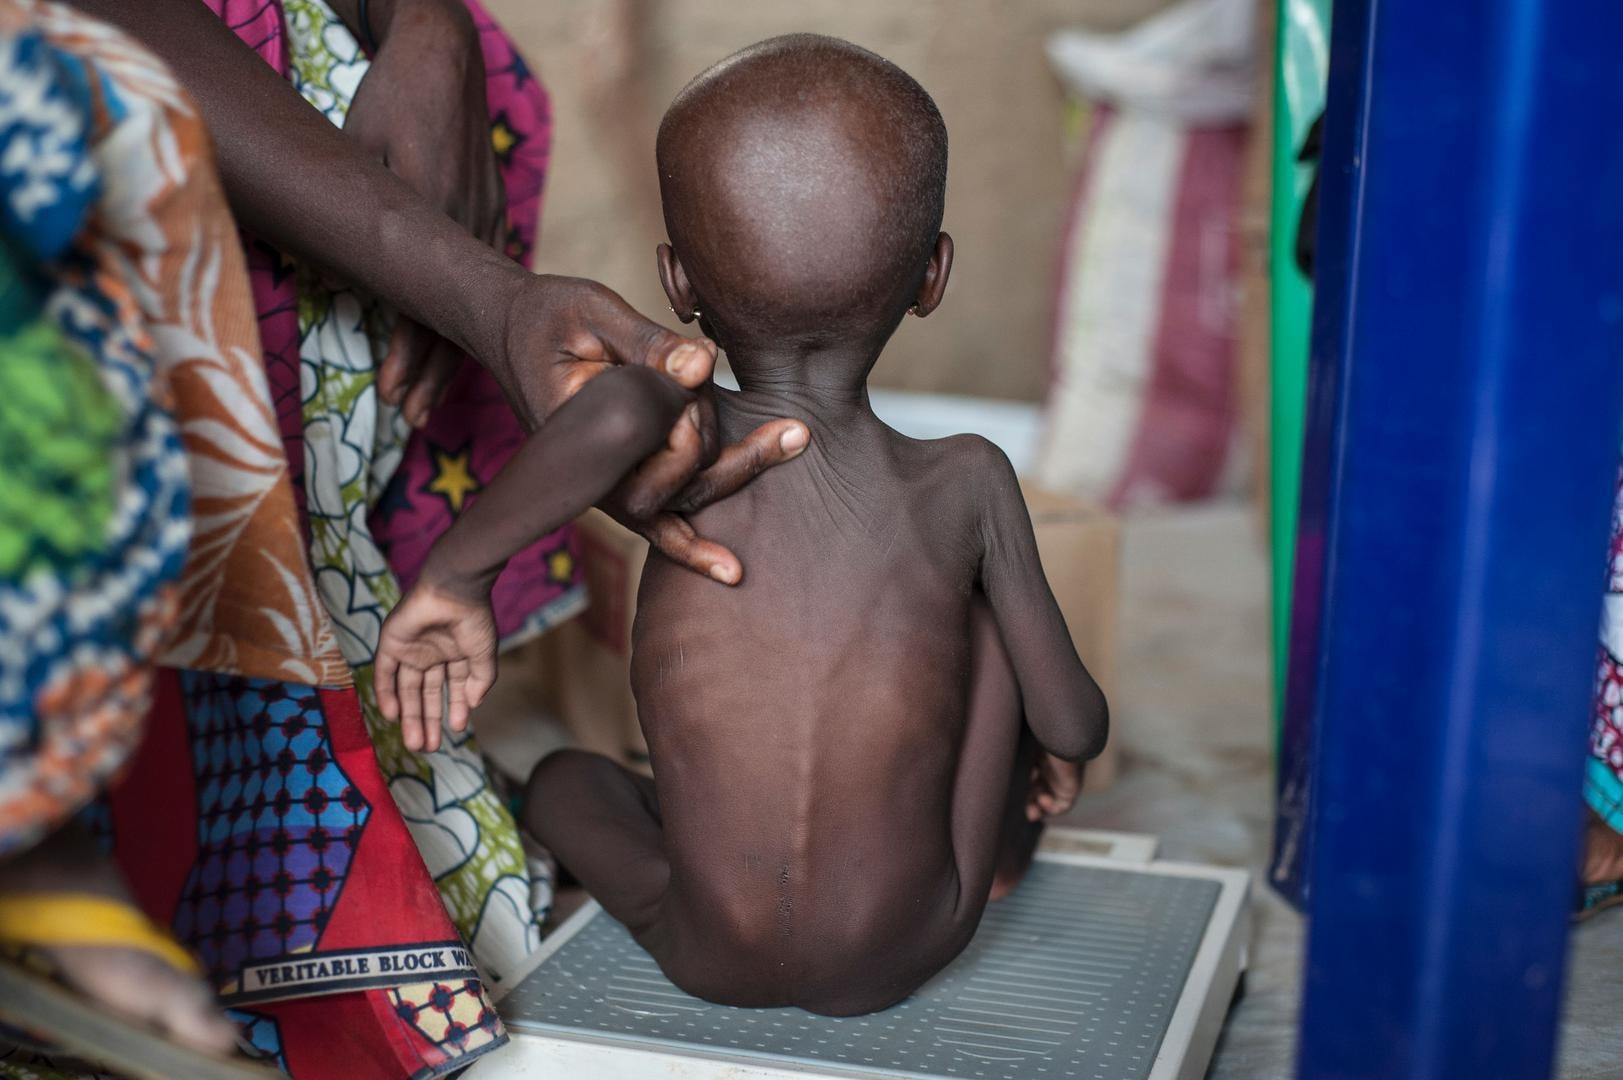 Ruim 815 miljoen mensen lijden honger, aantal neemt weer toe